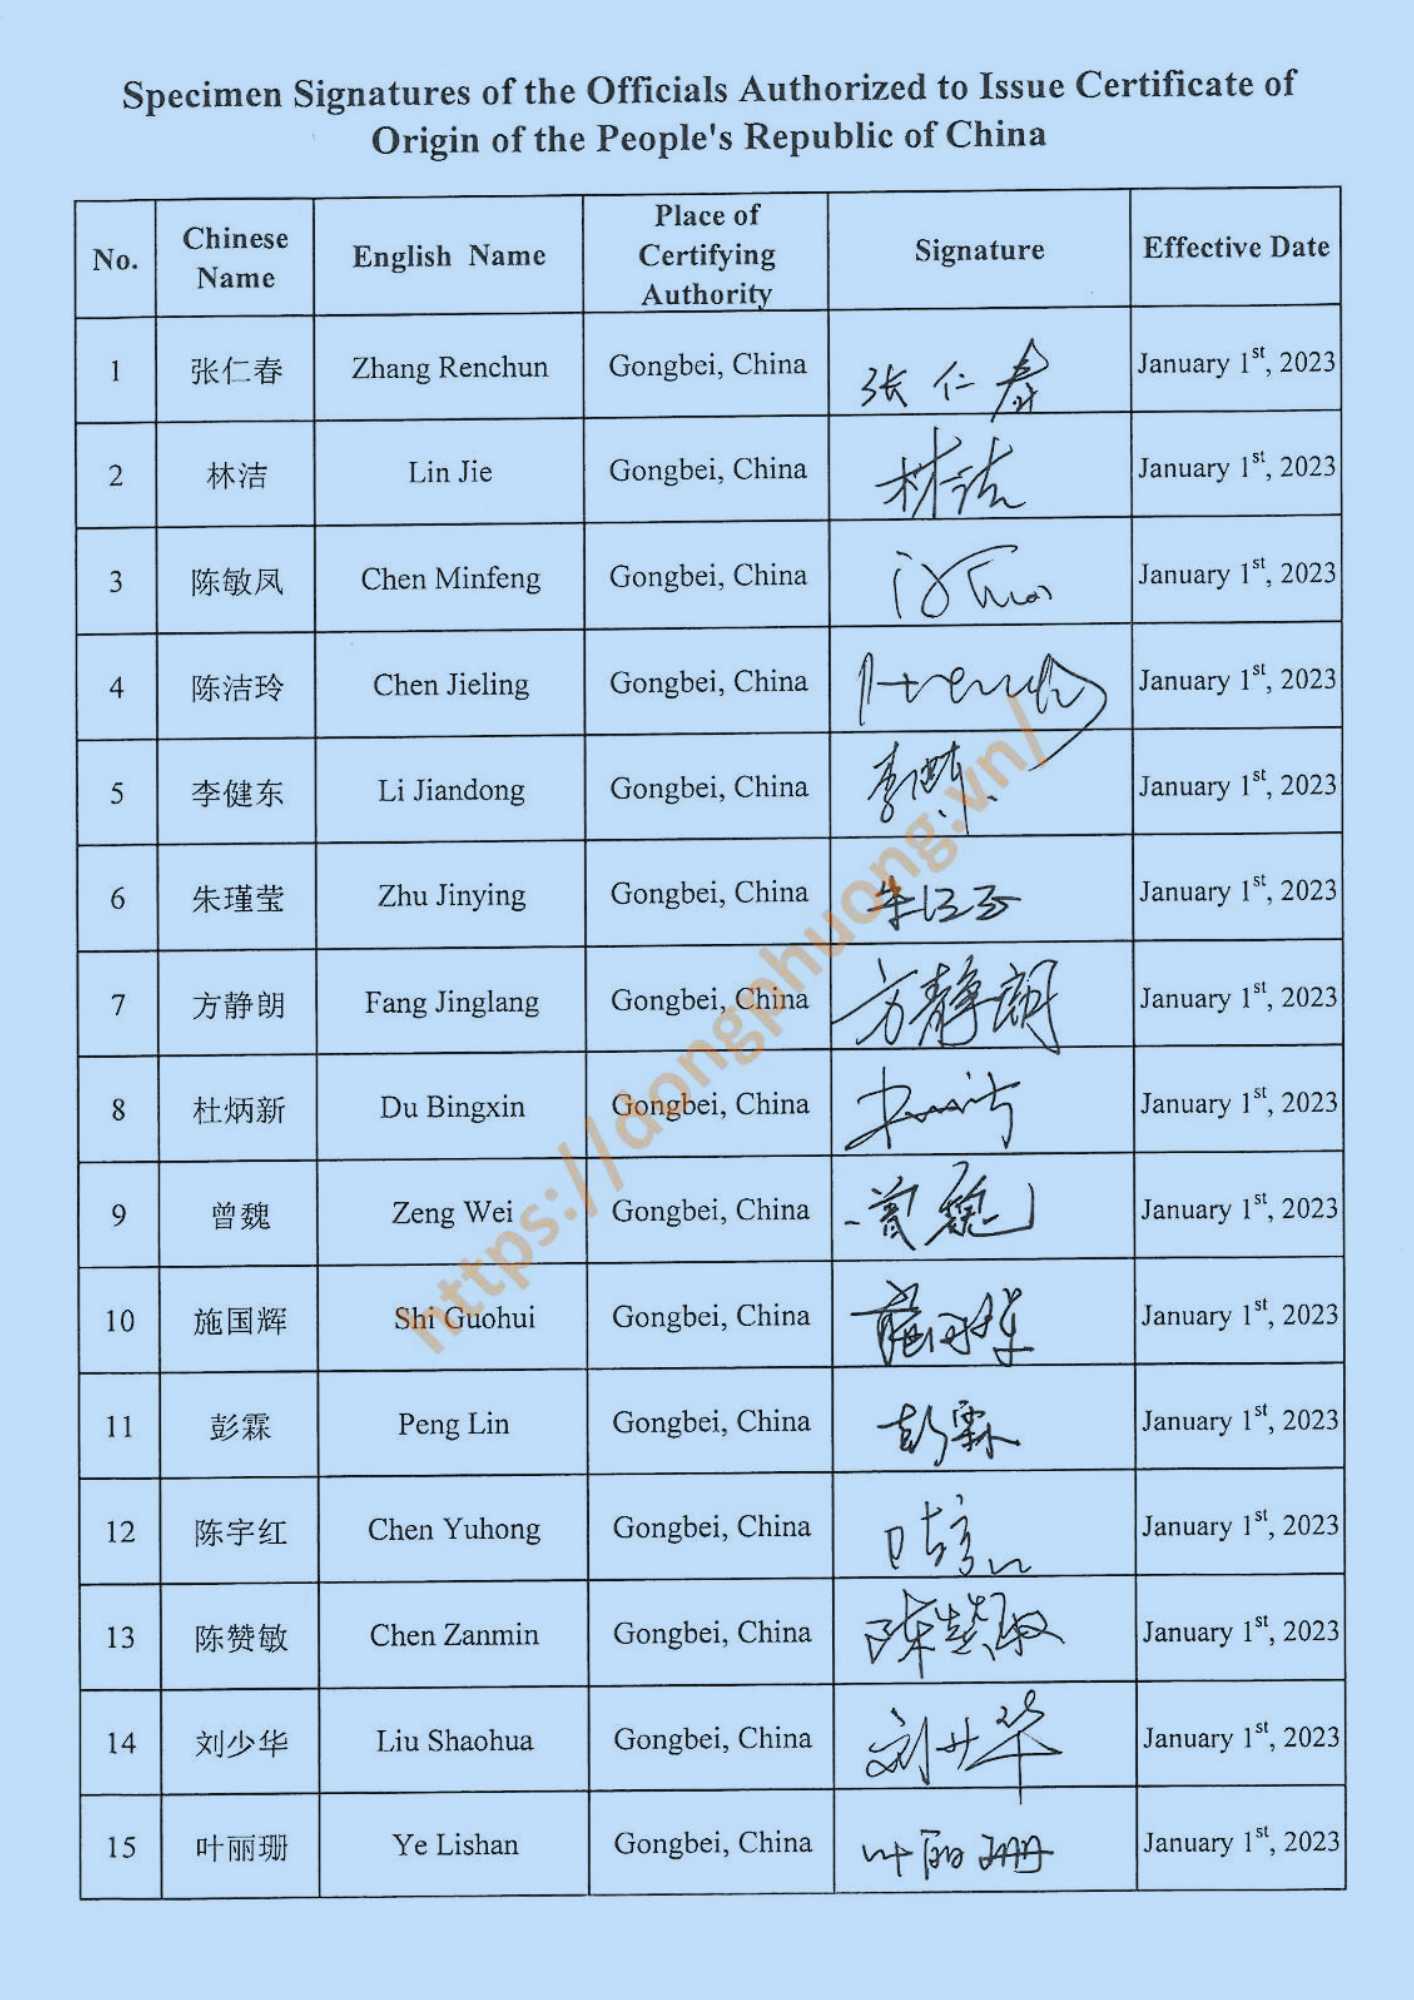 mẫu dấu và chữ ký form E 2023 gongbei customs